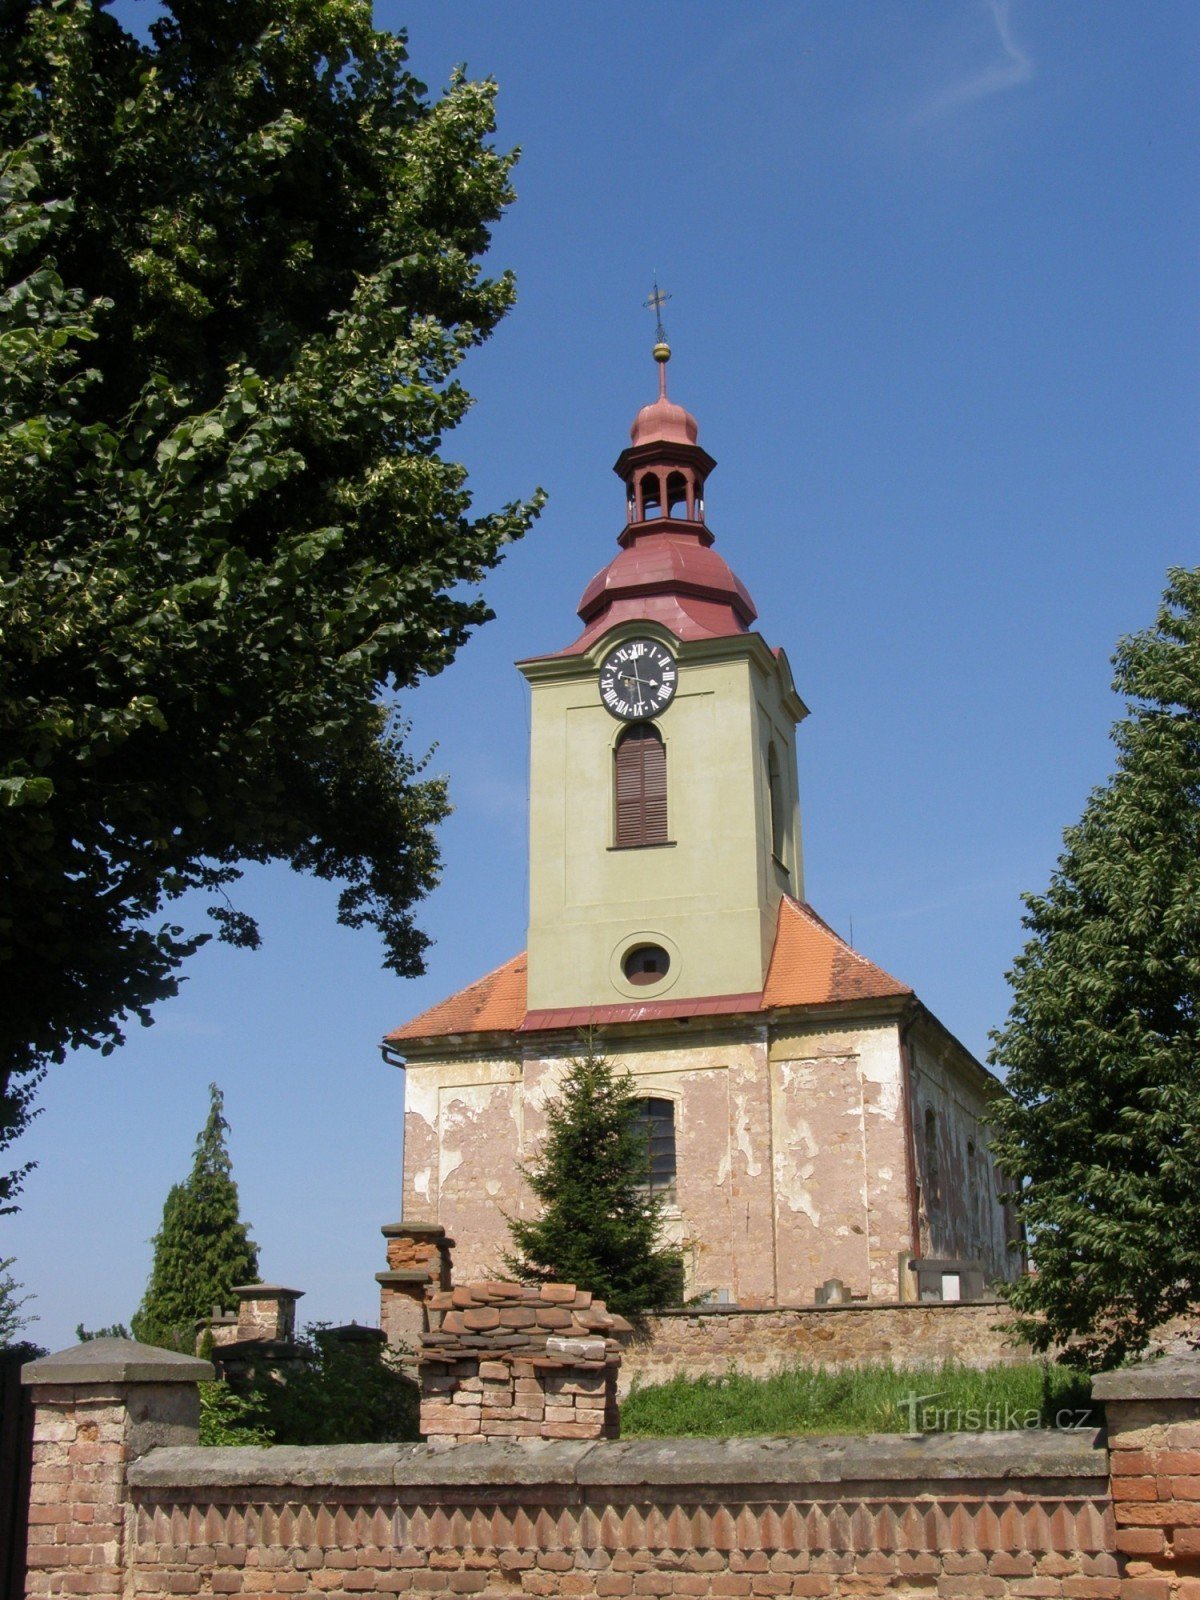 Lužany - Igreja de St. Maria Madalena